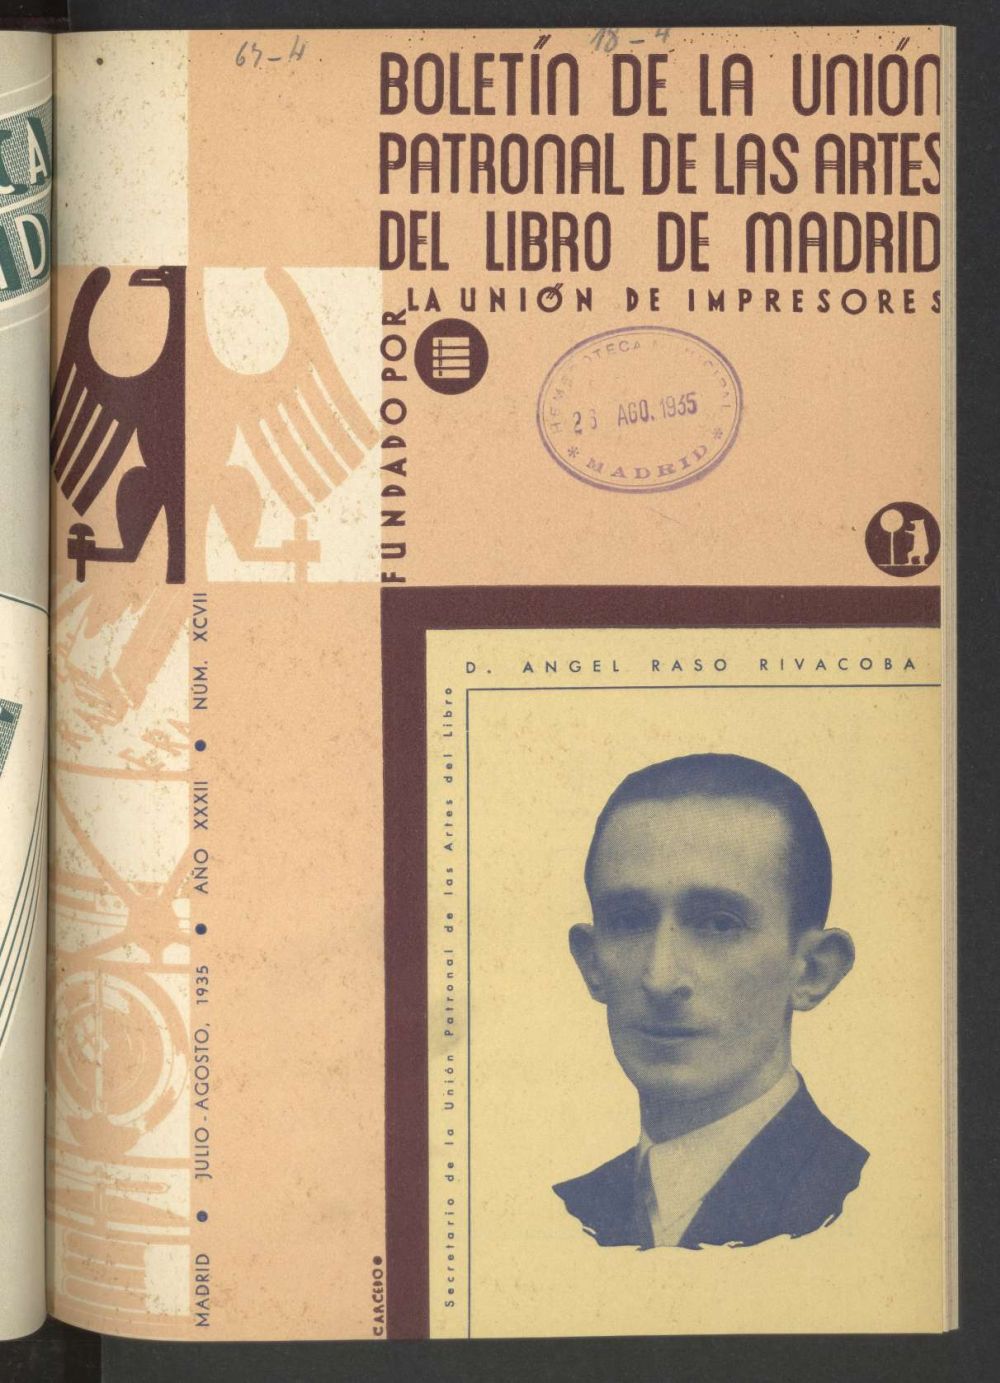 Boletn de la unin patronal de las artes del libro de Madrid de agosto de 1935